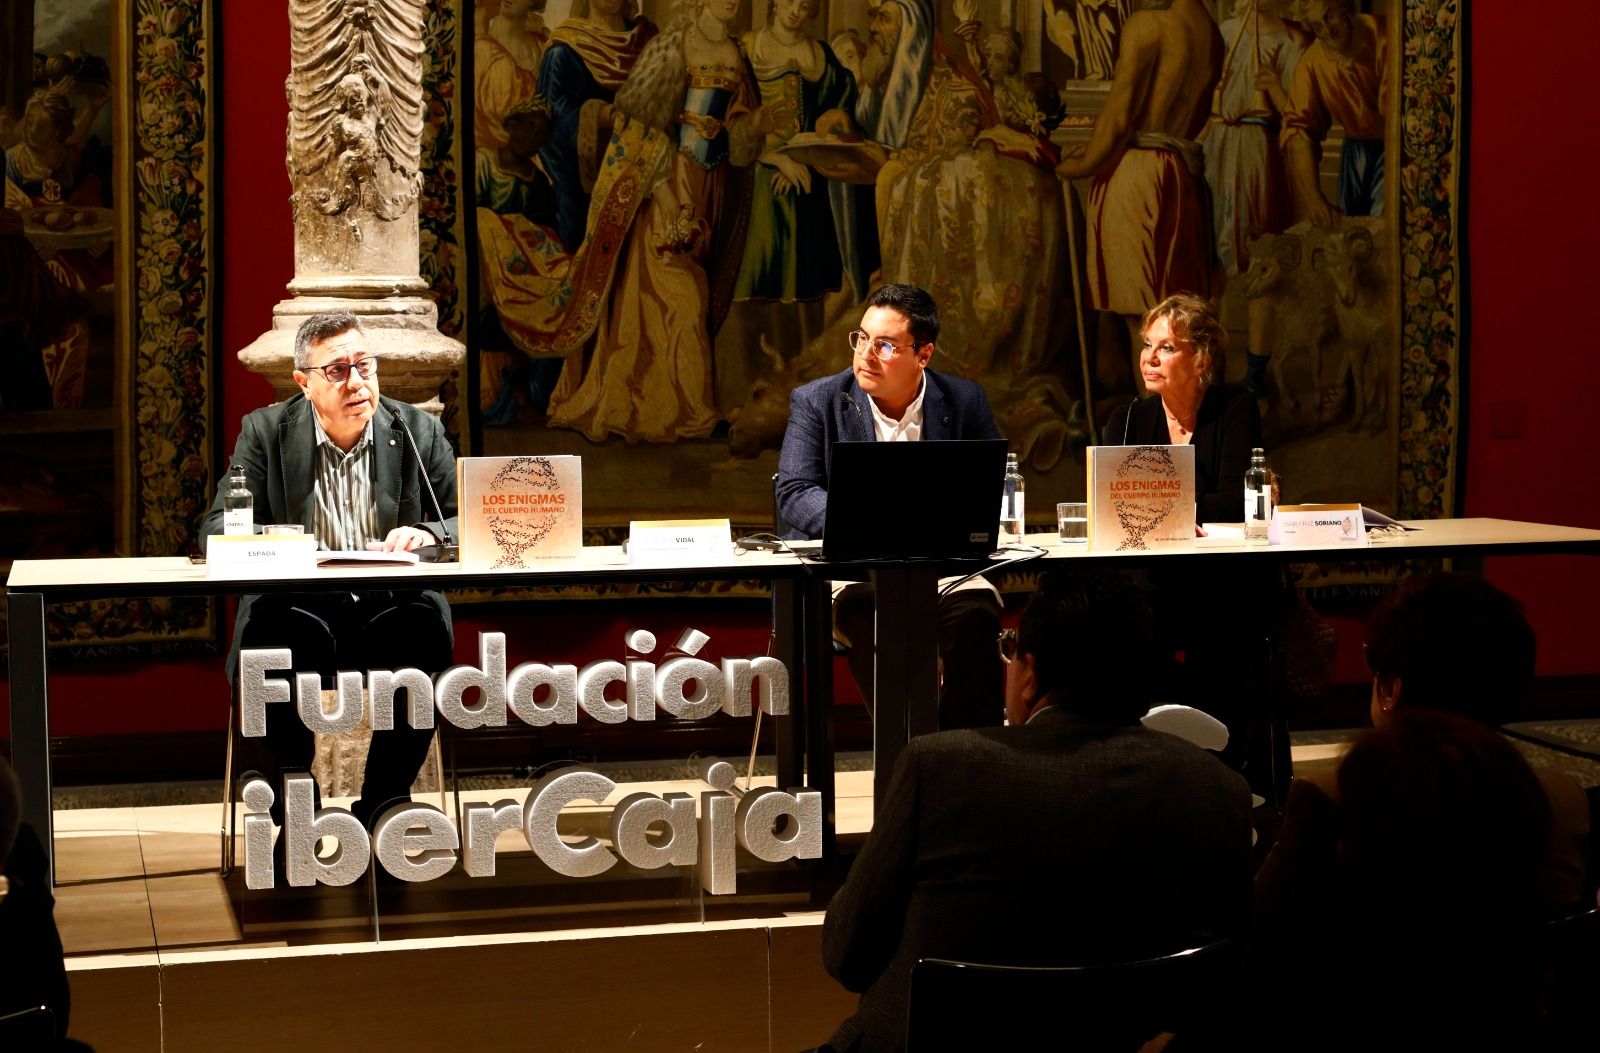 El doctor Vidal presenta ‘Los enigmas del cuerpo humano’ en Zaragoza